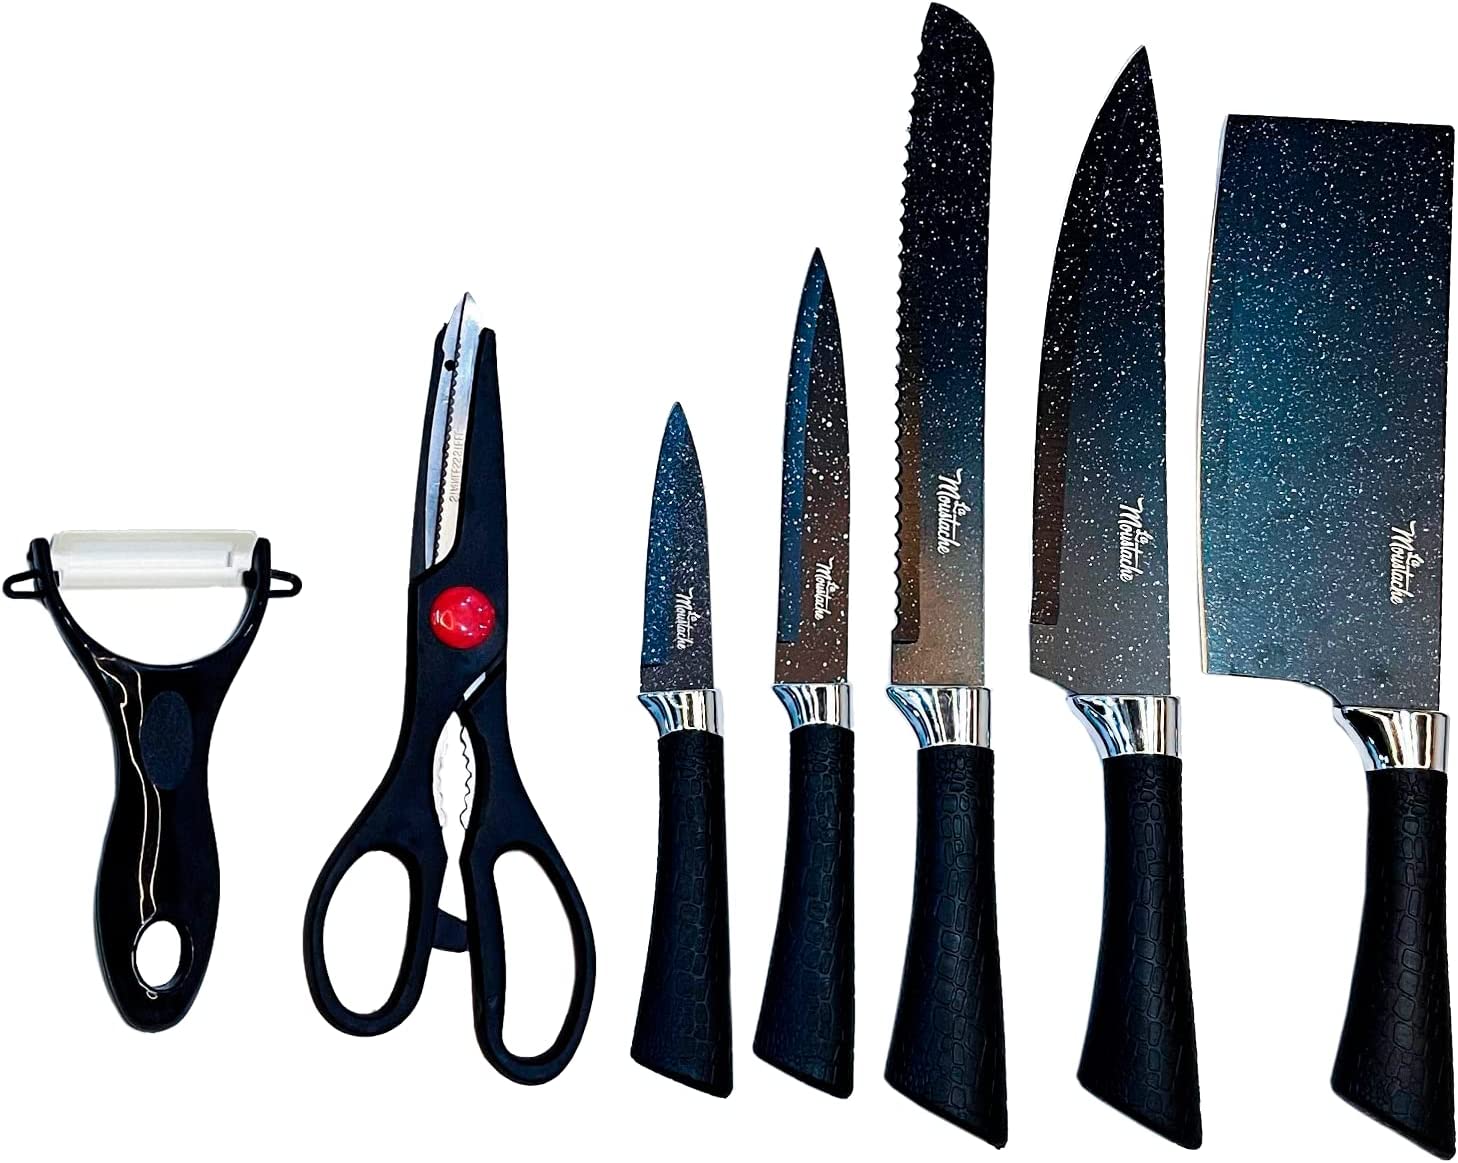 Juegos de cuchillos · Cuchillos de cocina · El Corte Inglés (35)